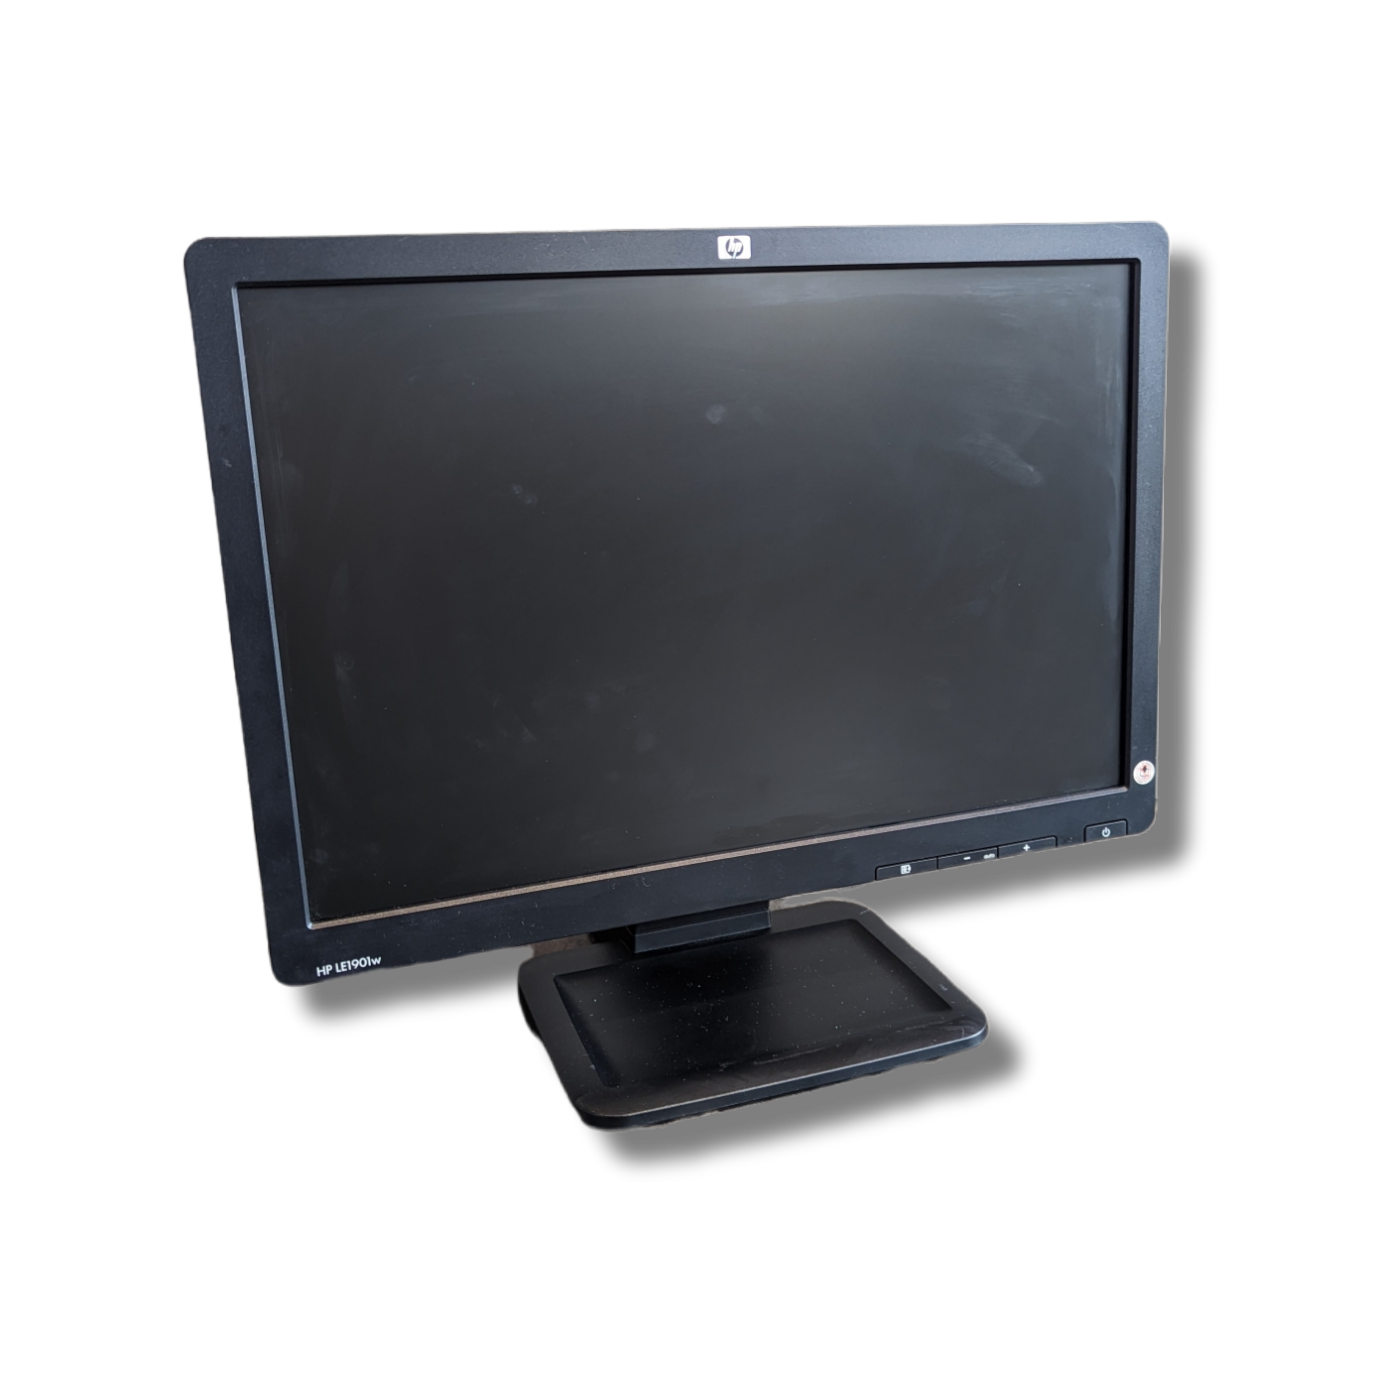 HP 19" LCD Monitor (refurbished)